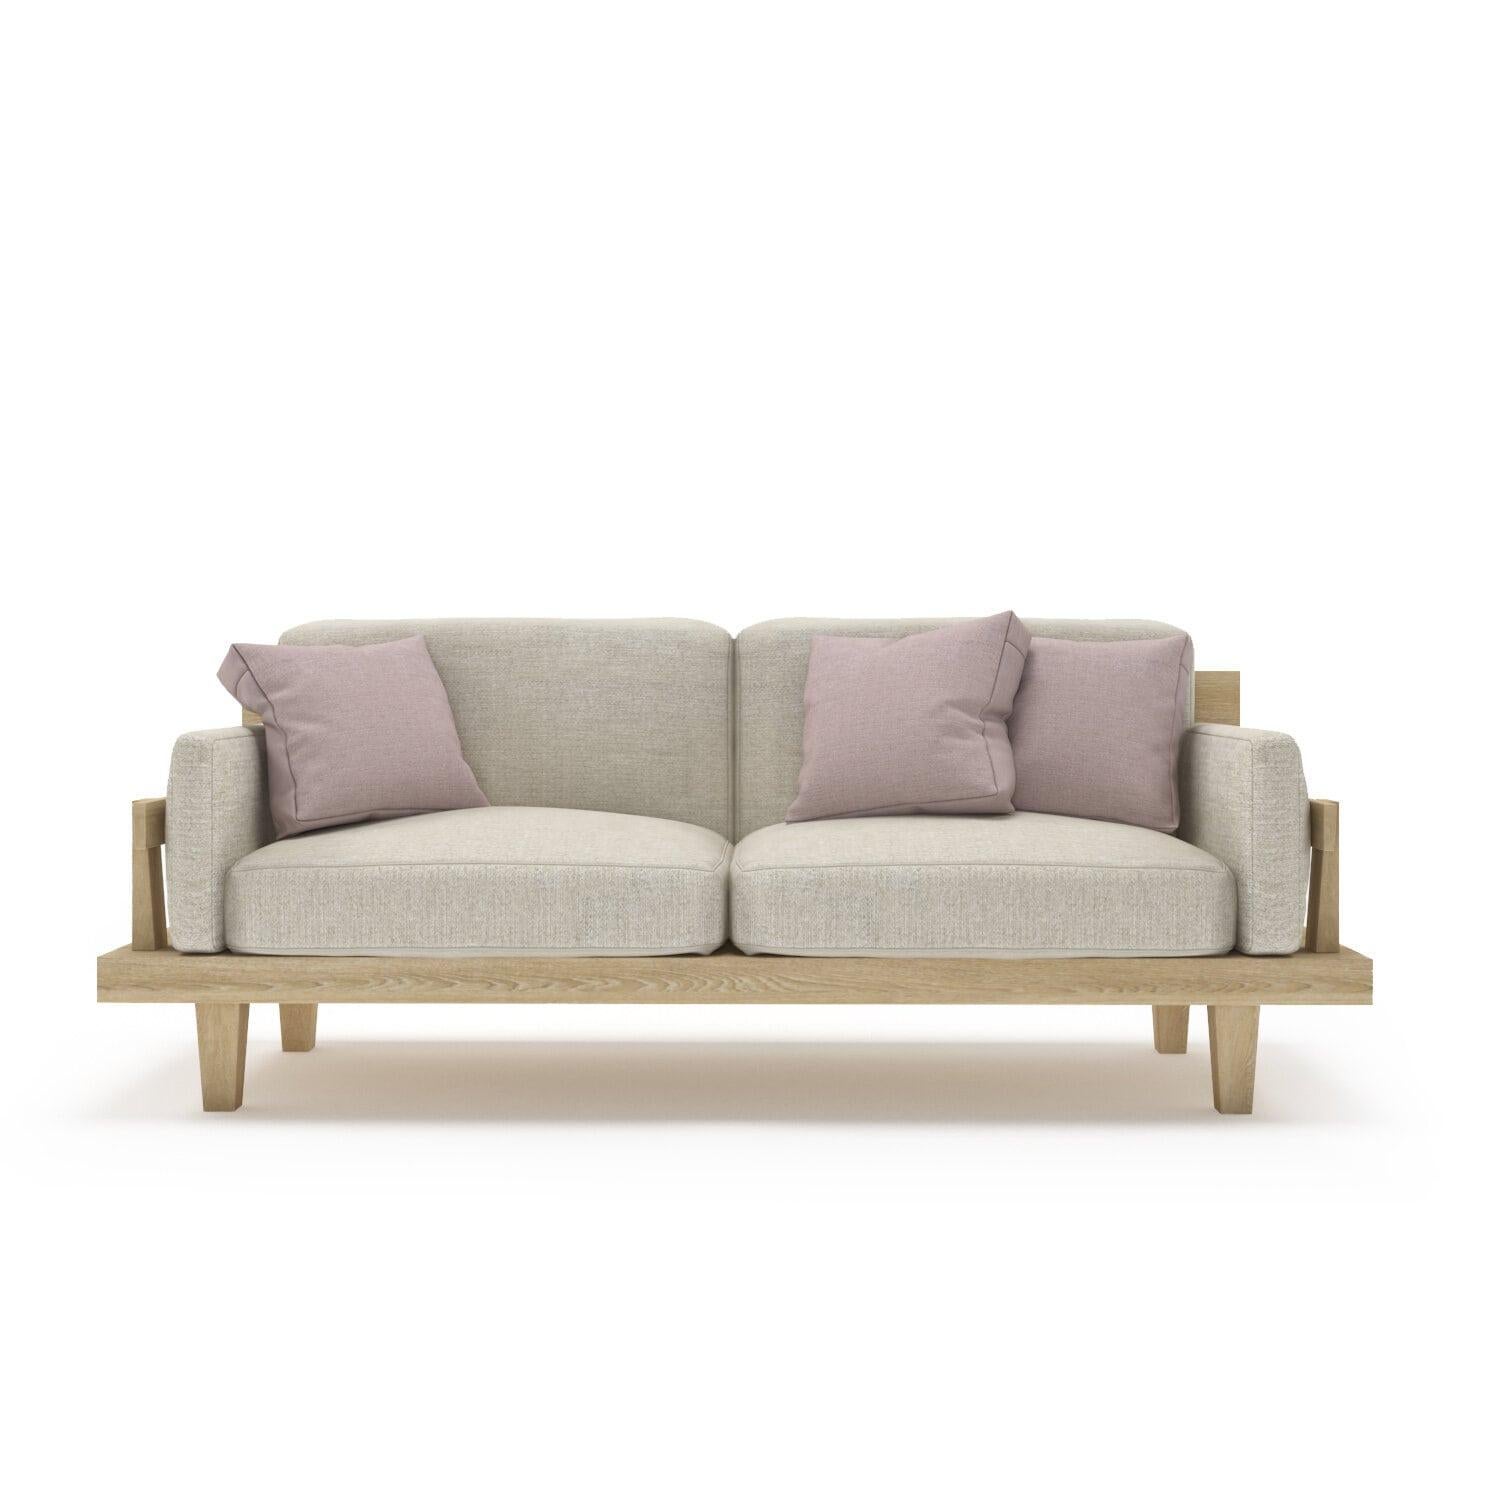 Das Bengalo-Sofa mit seinem massiven Eichenholzrahmen, den üppigen Kissen und der stützenden Struktur wird Sie in gemütliche Entspannung versetzen. Versinken Sie im Bengalo und erleben Sie Wärme und Komfort pur!

Alle Tektōn-Stücke sind aus